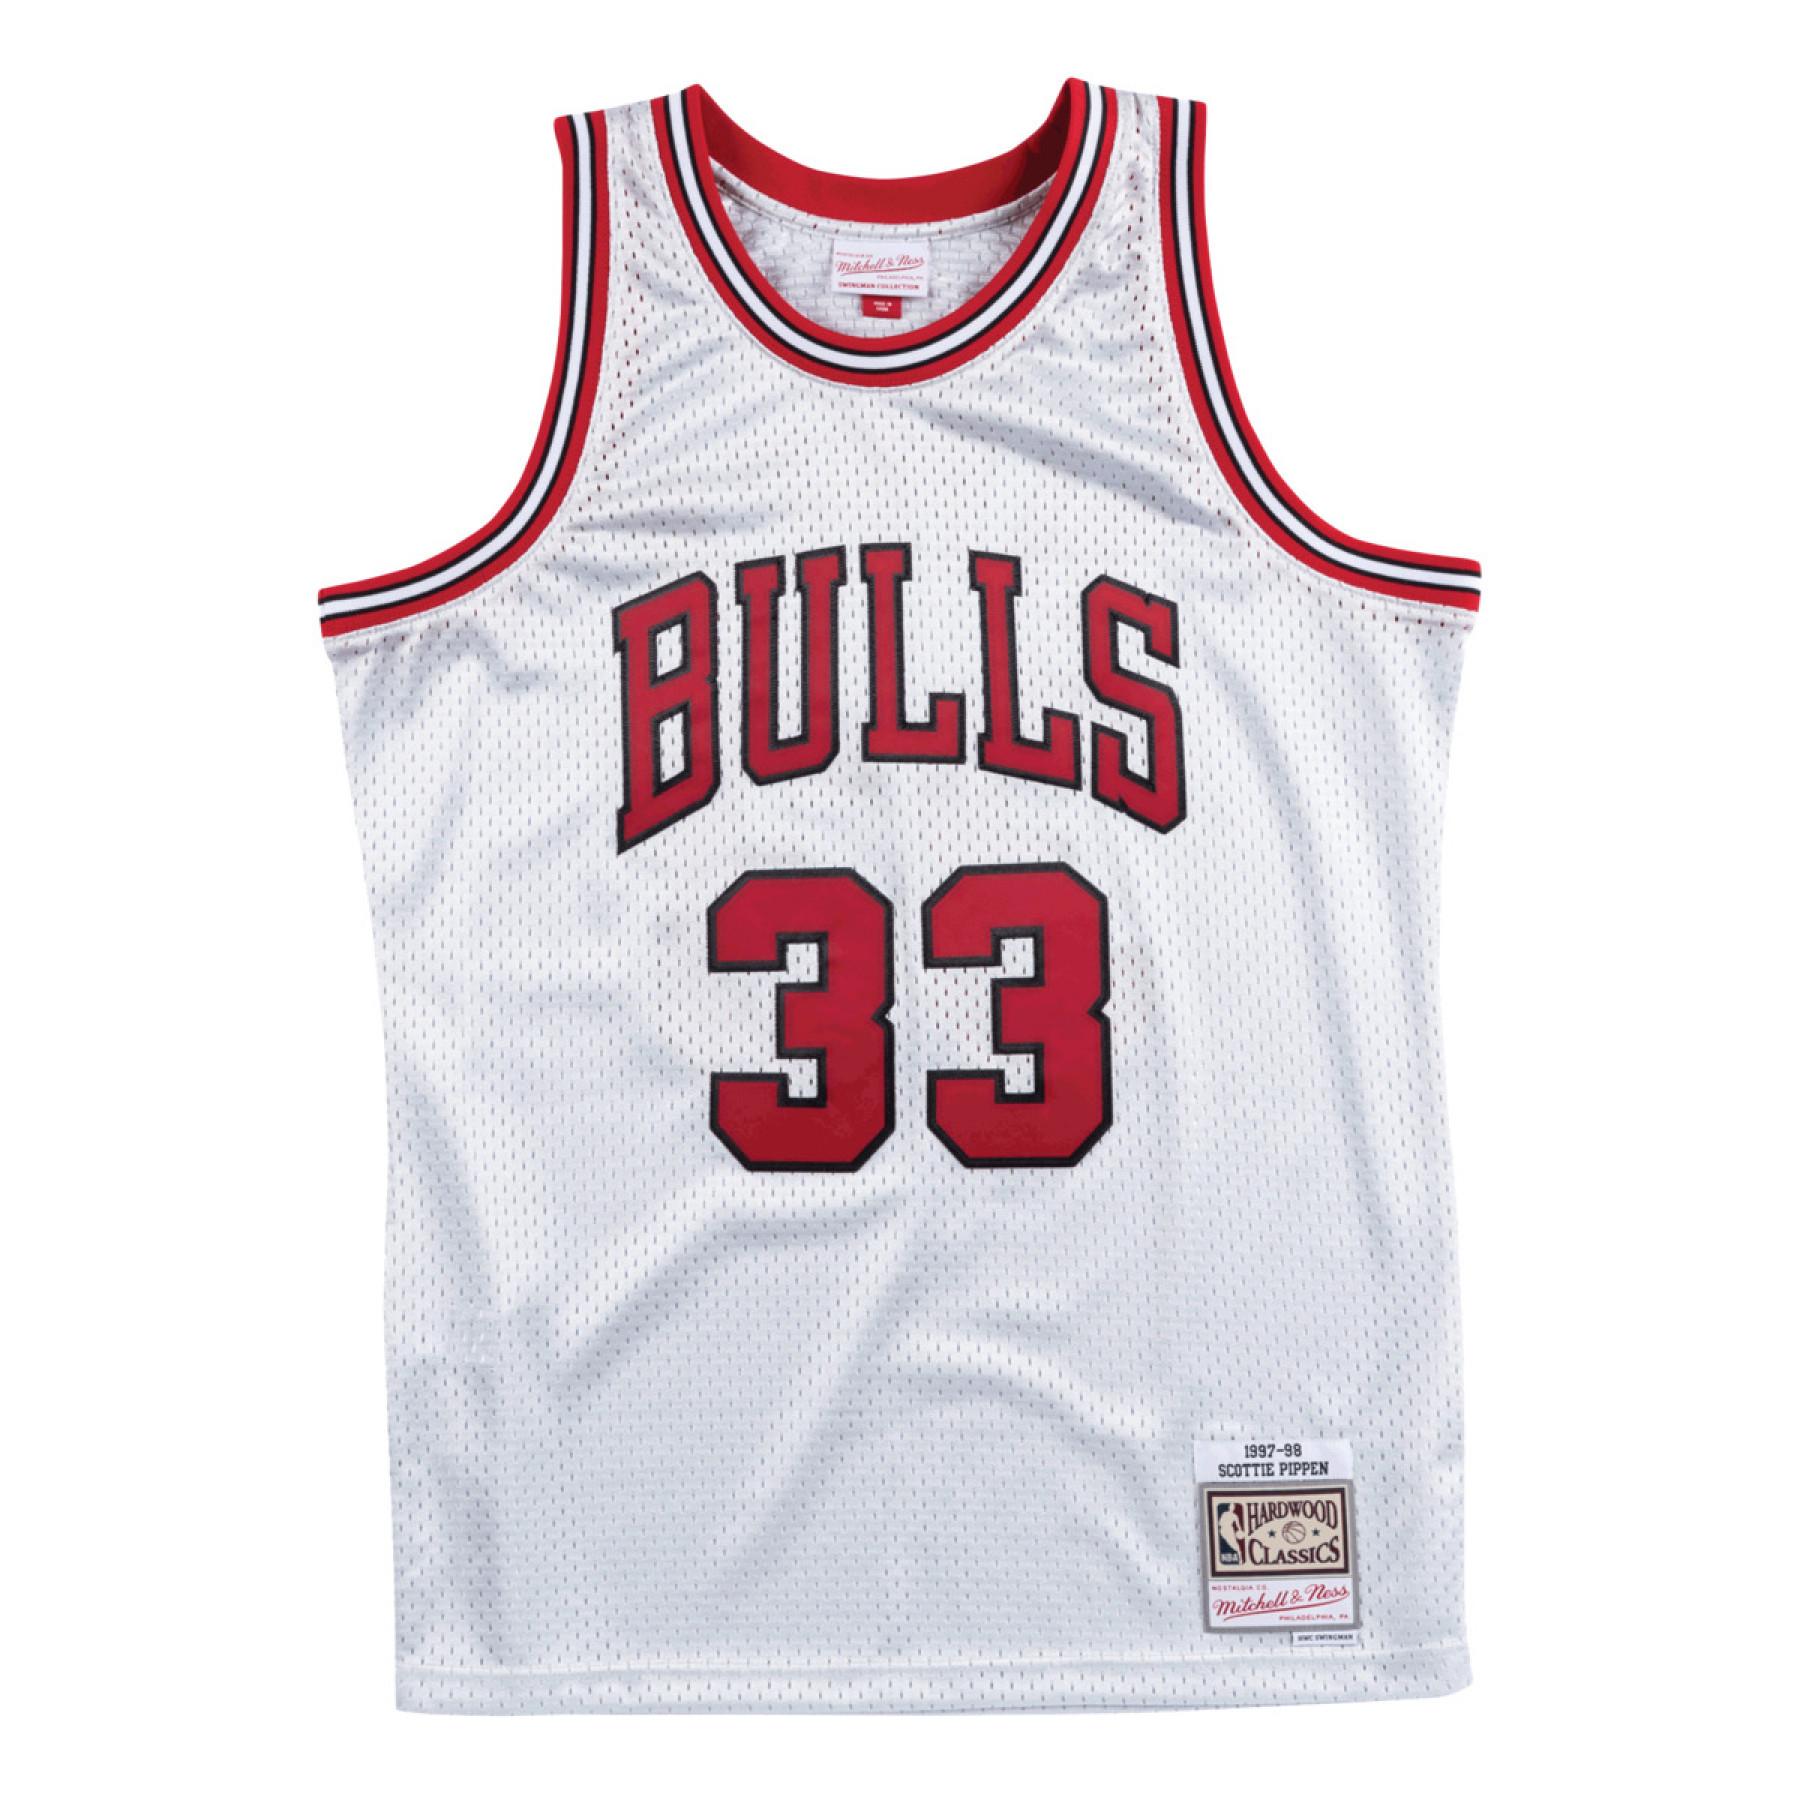 Maillot Chicago Bulls 1997-98 Scottie Pippen Platinum